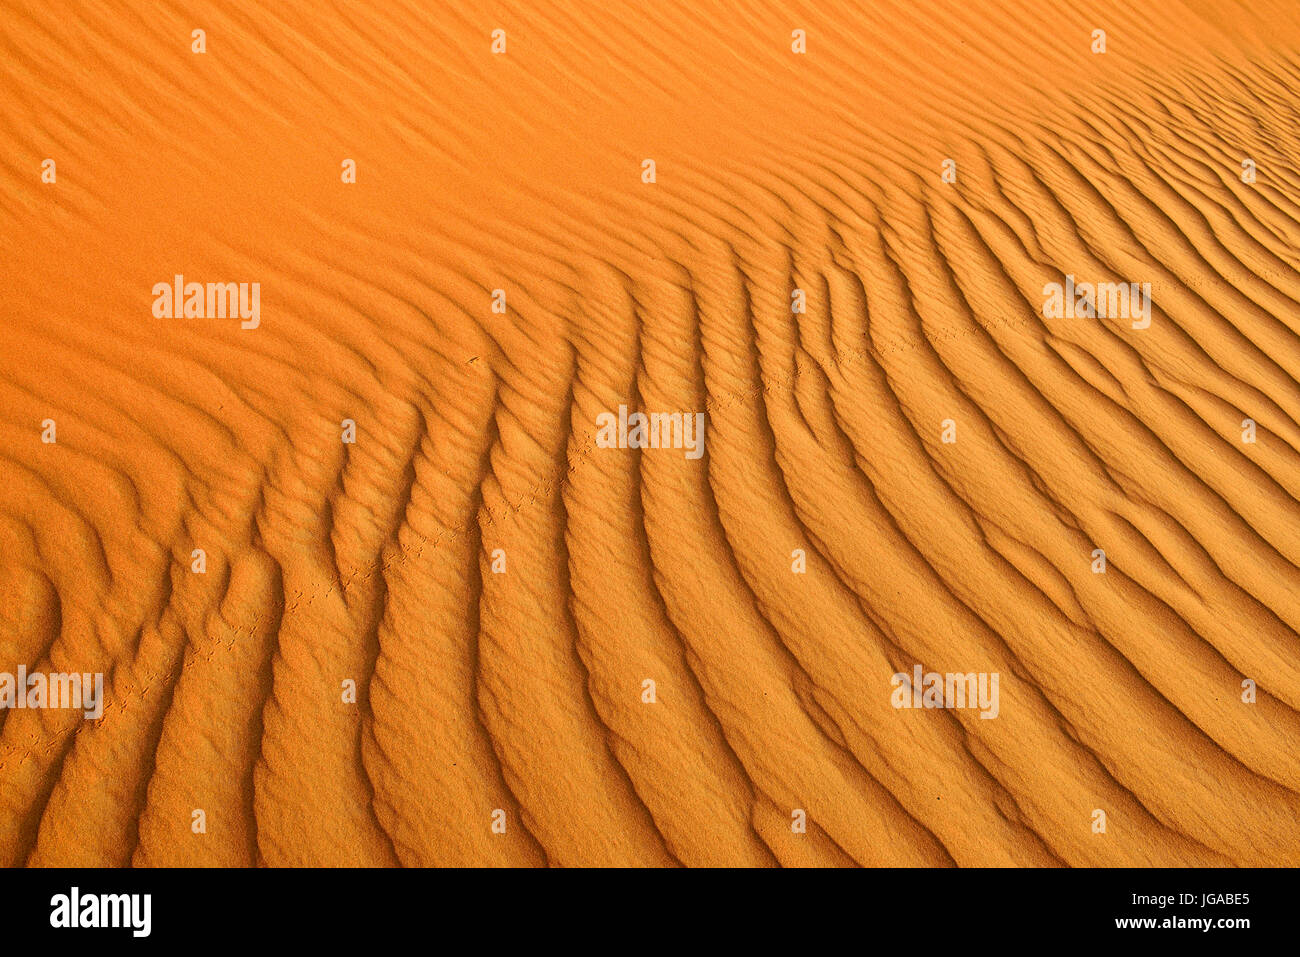 Sand ripples on sand dunes, Tassili n'Ajjer National Park, UNESCO World Heritage Site, Sahara desert, Algeria Stock Photo